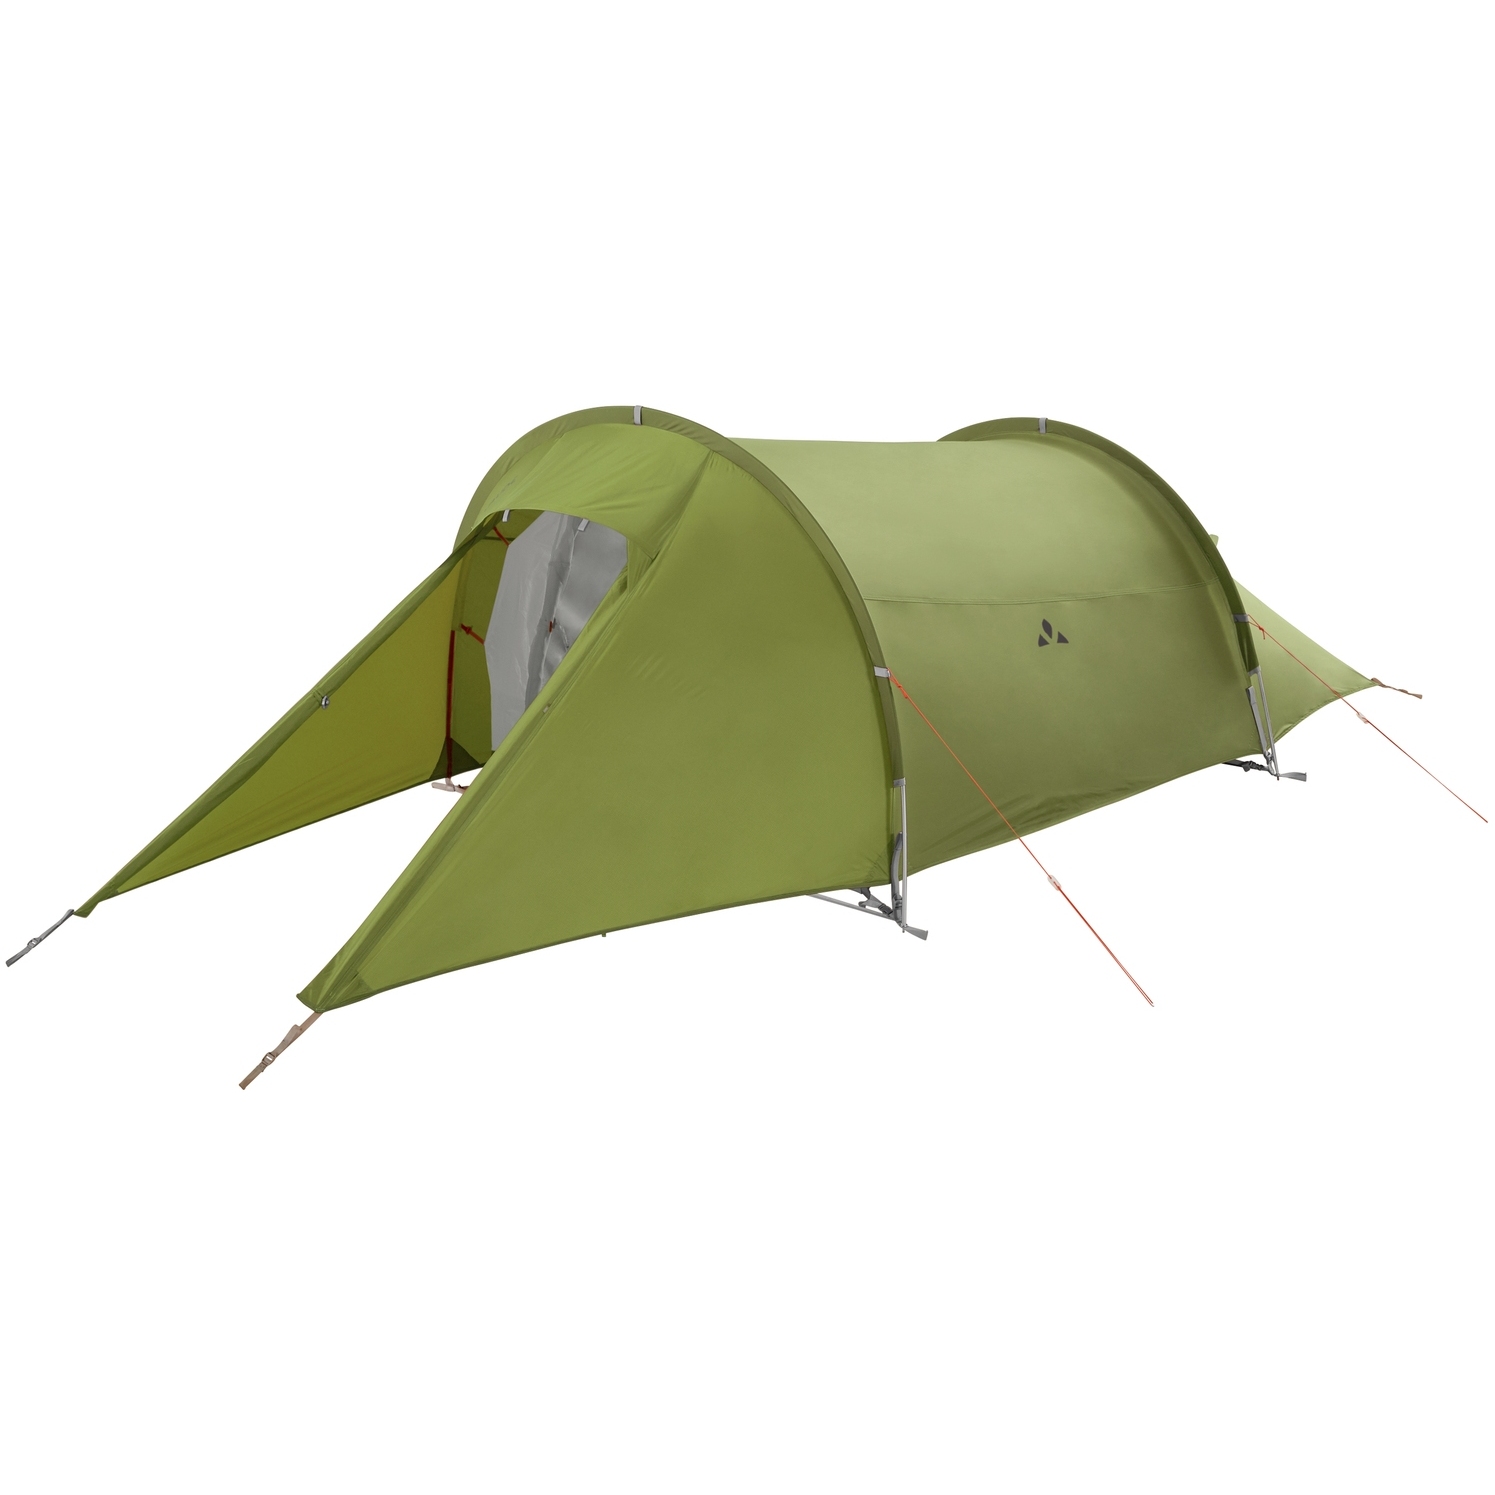 Productfoto van Vaude Arco 2P Tent - mossy green